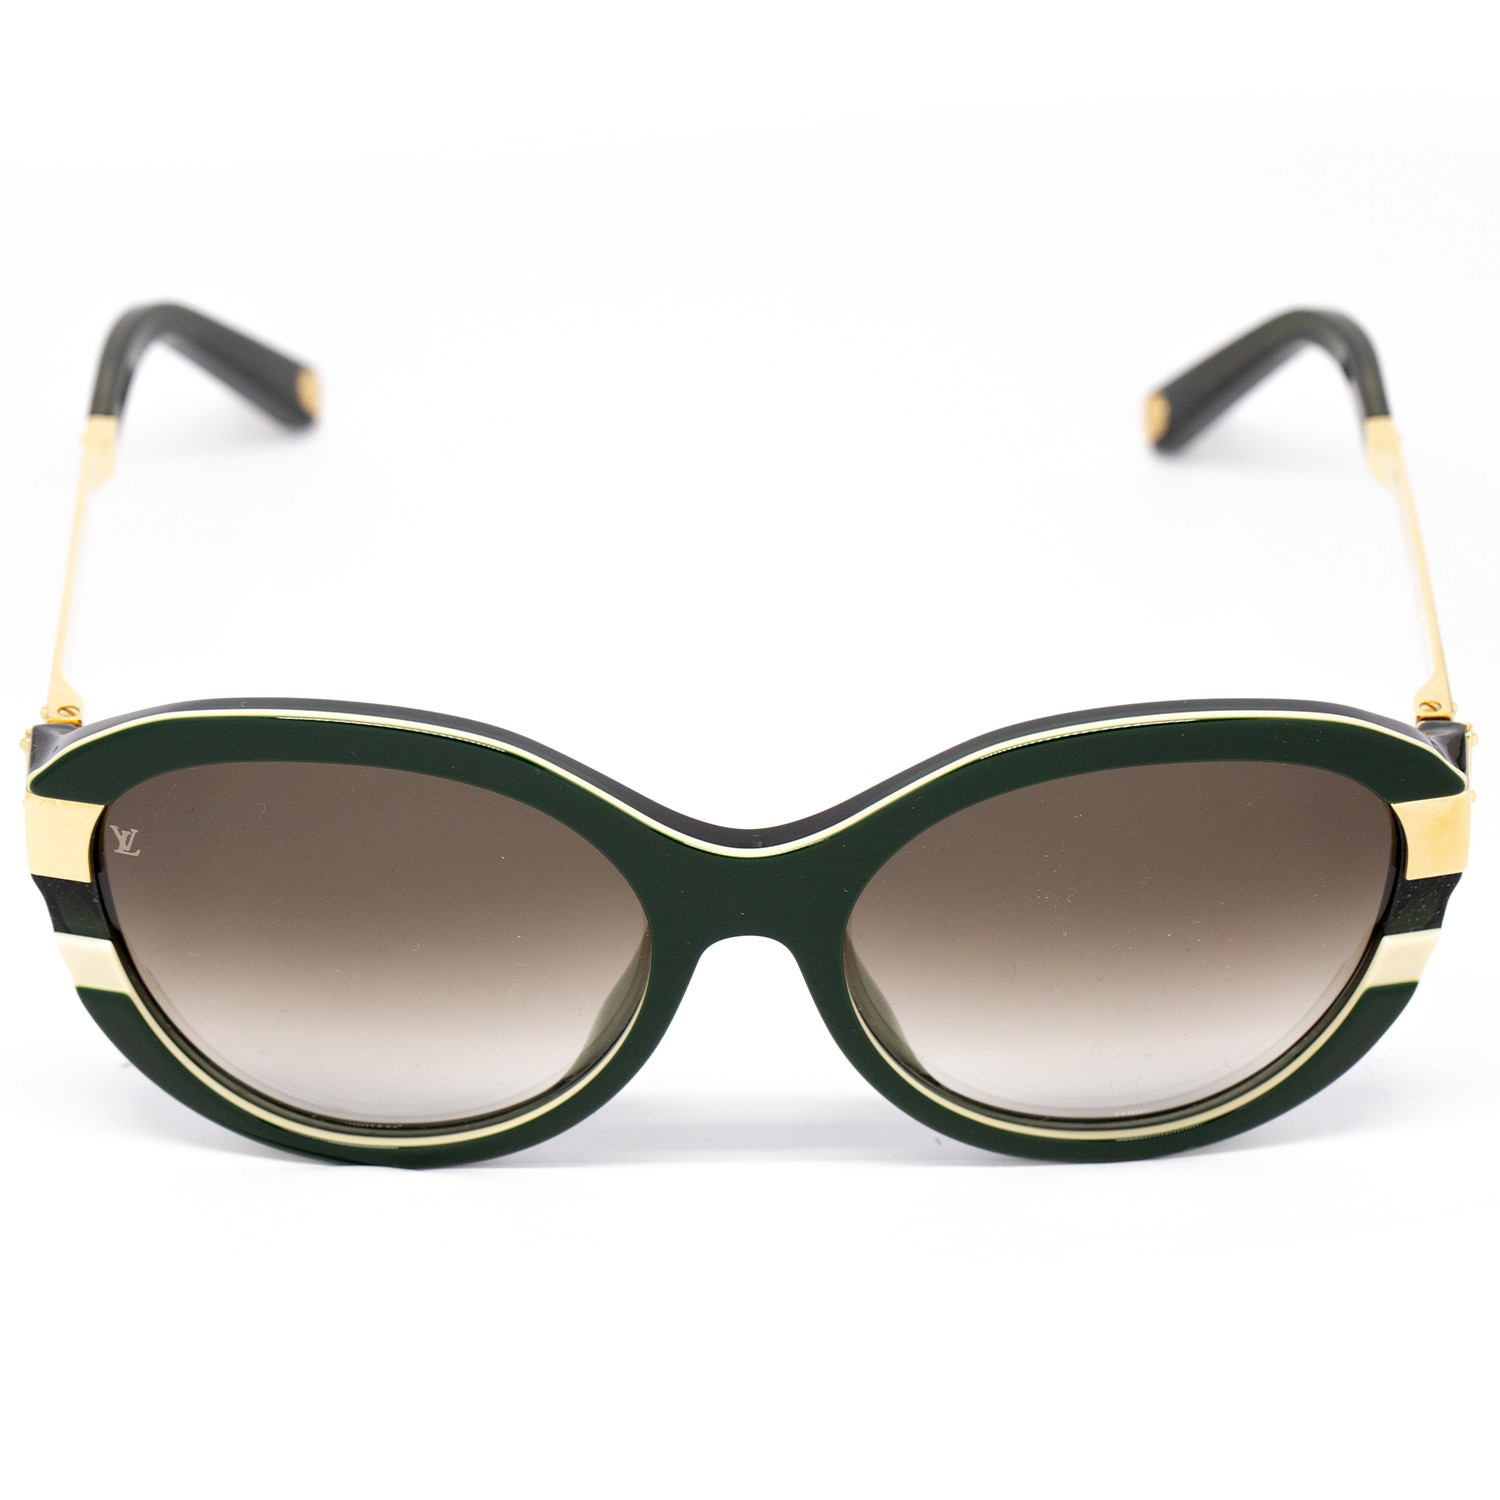 Louis Vuitton womens Lunettes de Soleil sunglasses